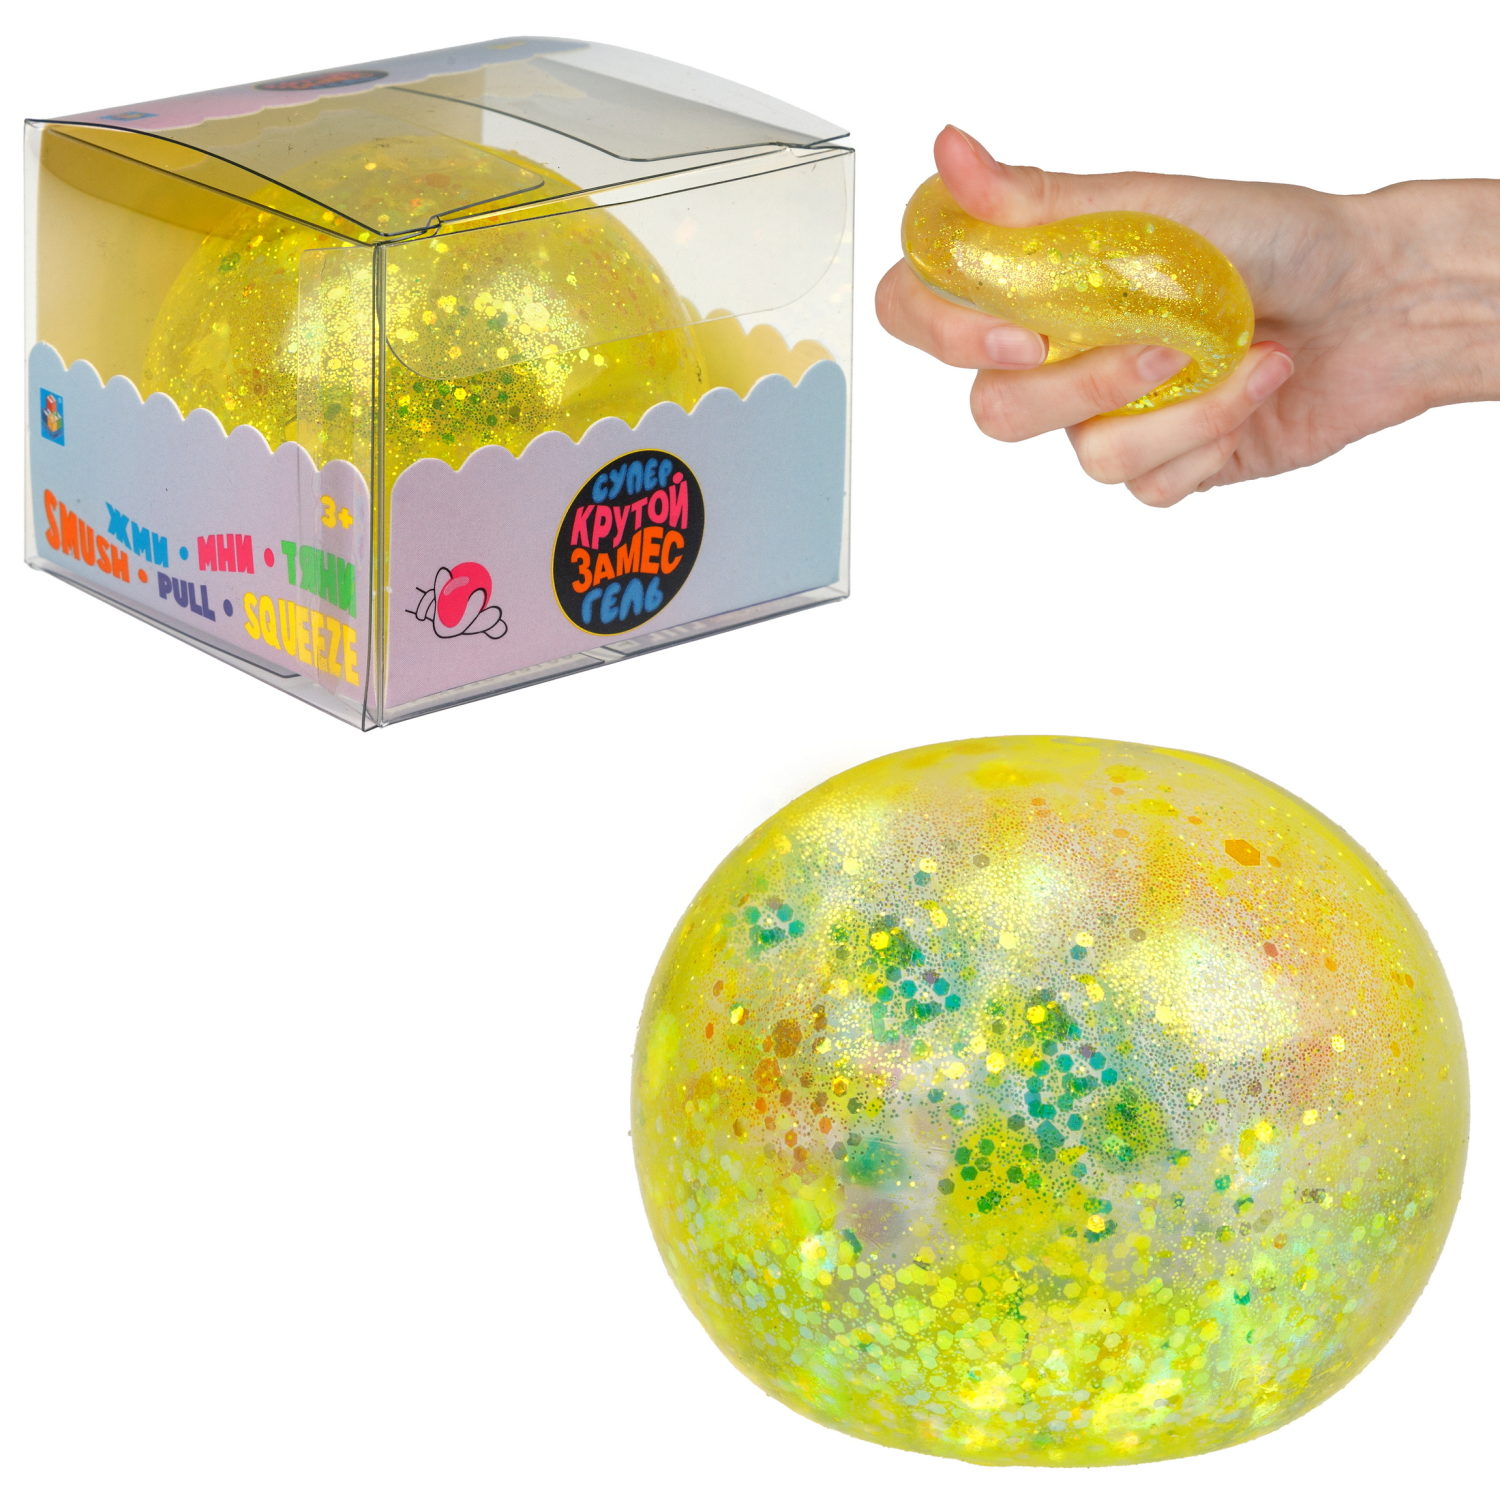 Игрушка-антистресс 1toy Крутой замес Супергель жёлтый шар блестки 6см 1toy игрушка для пускания мыльных пузырей жёлтый осьминог